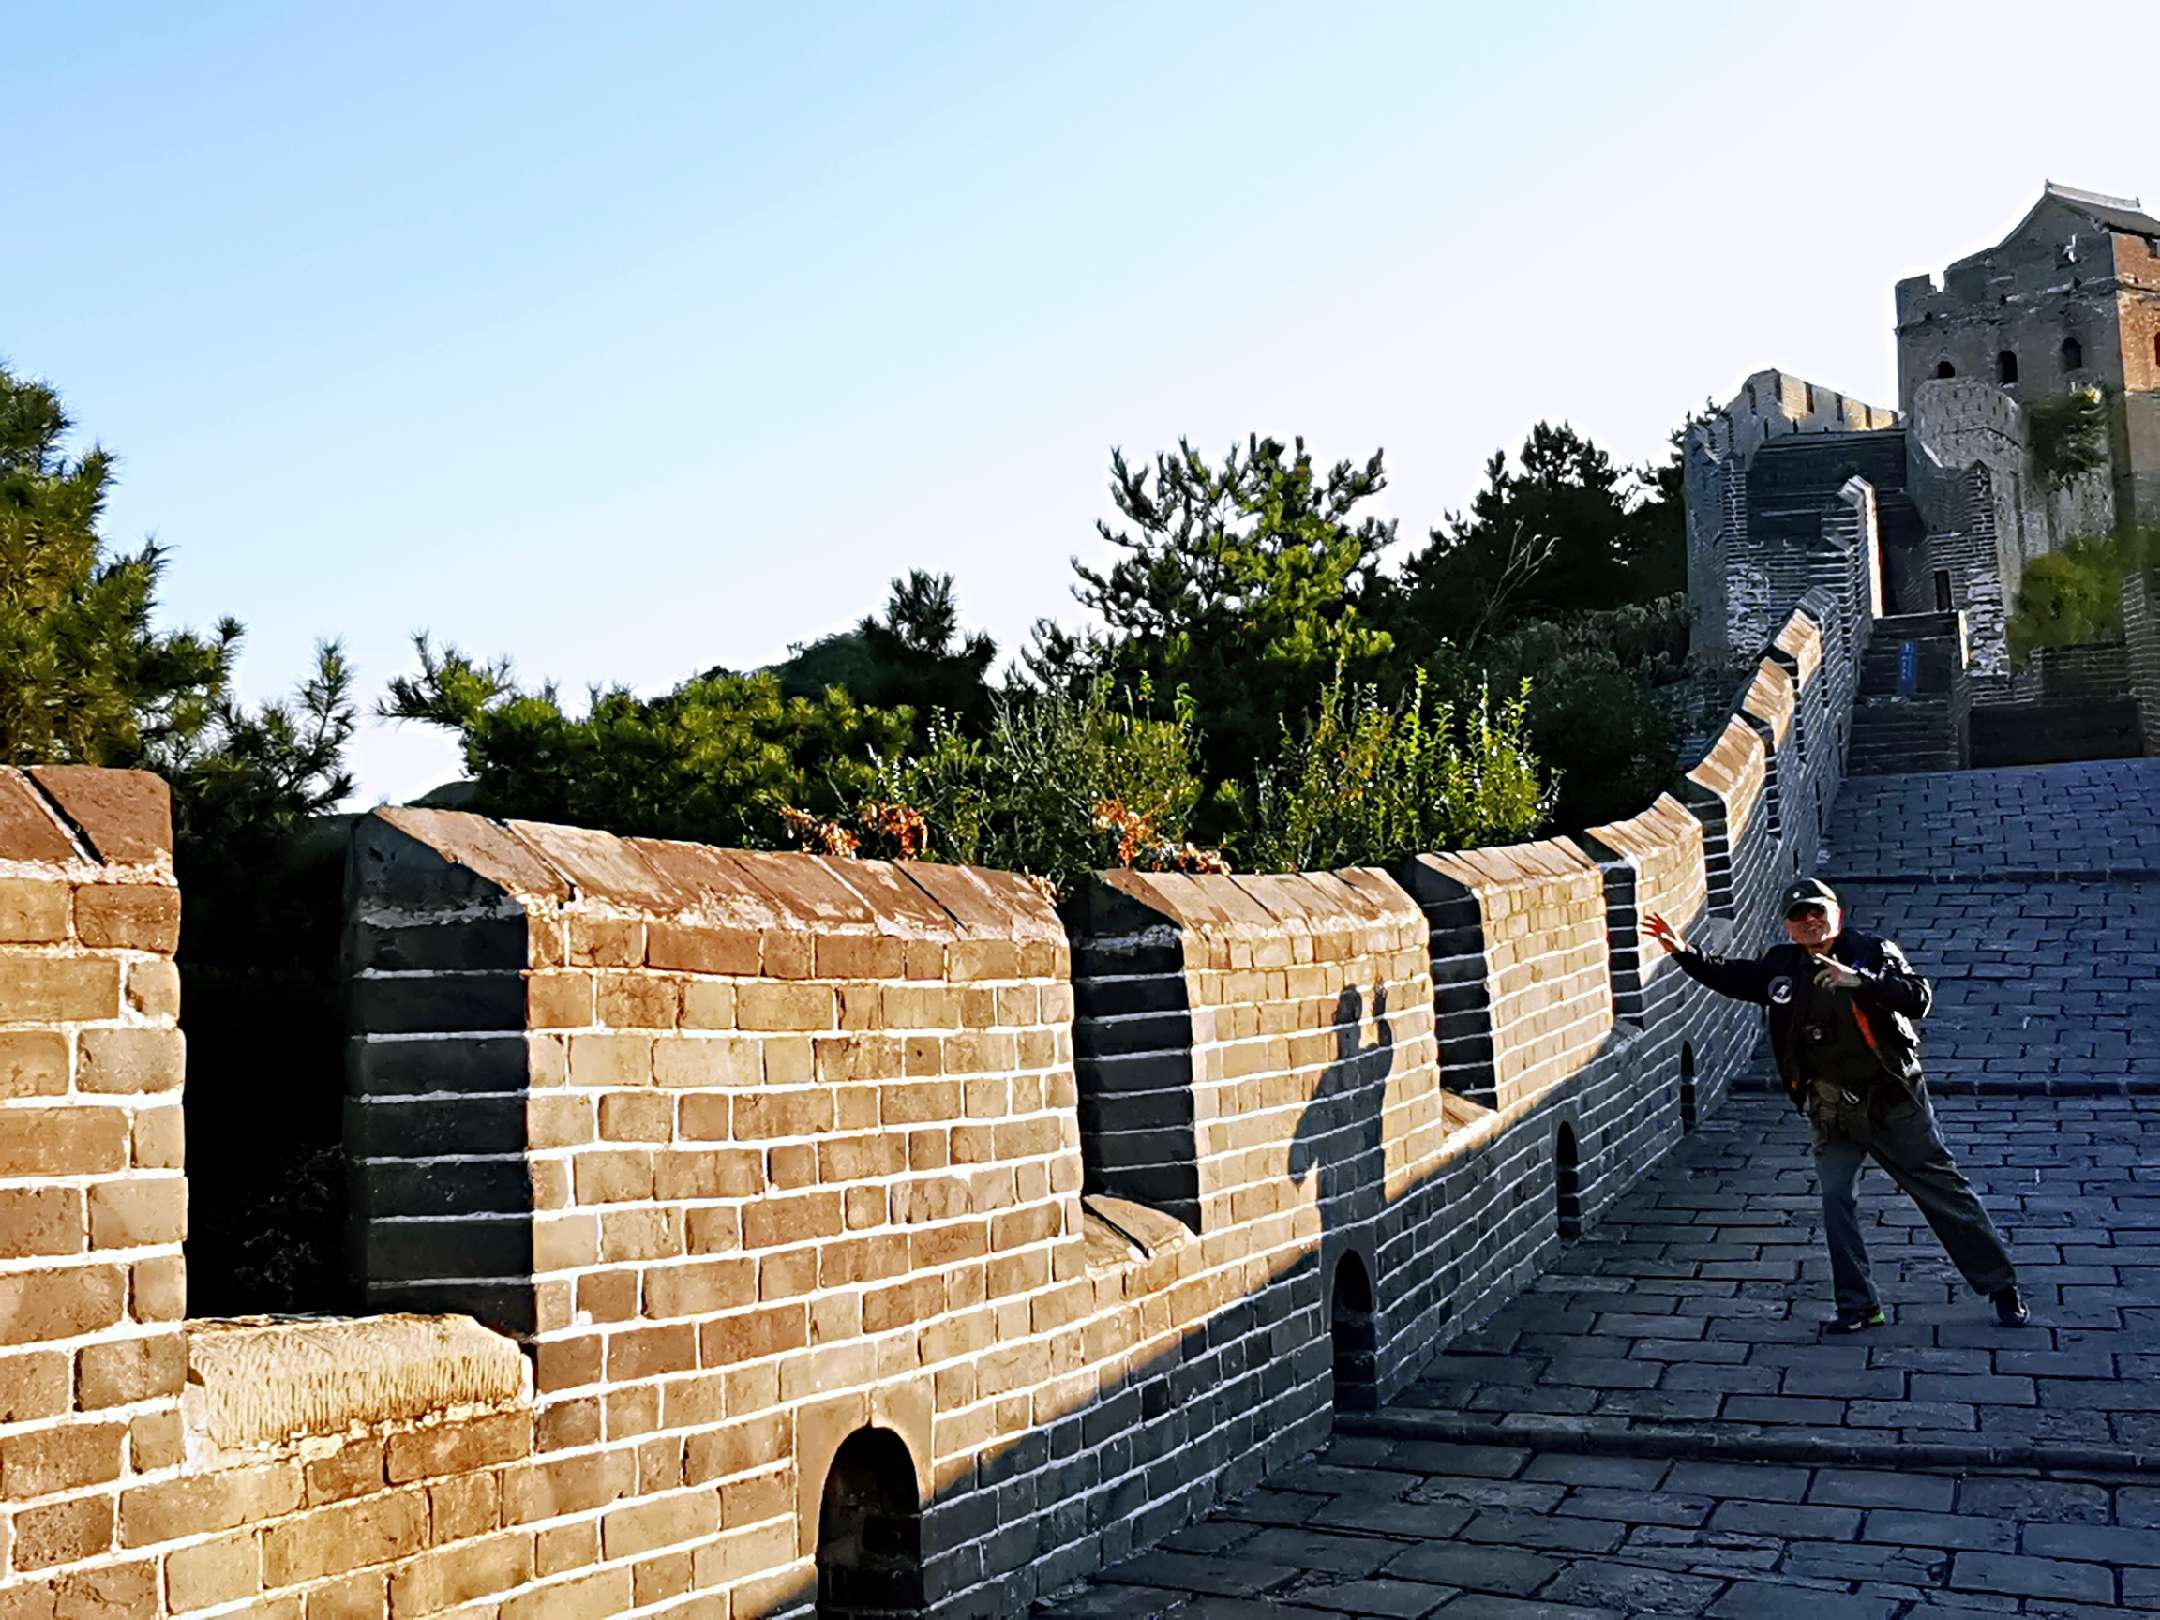 长城修筑的历史可上溯到西周时期，但它依然屹立于在中国